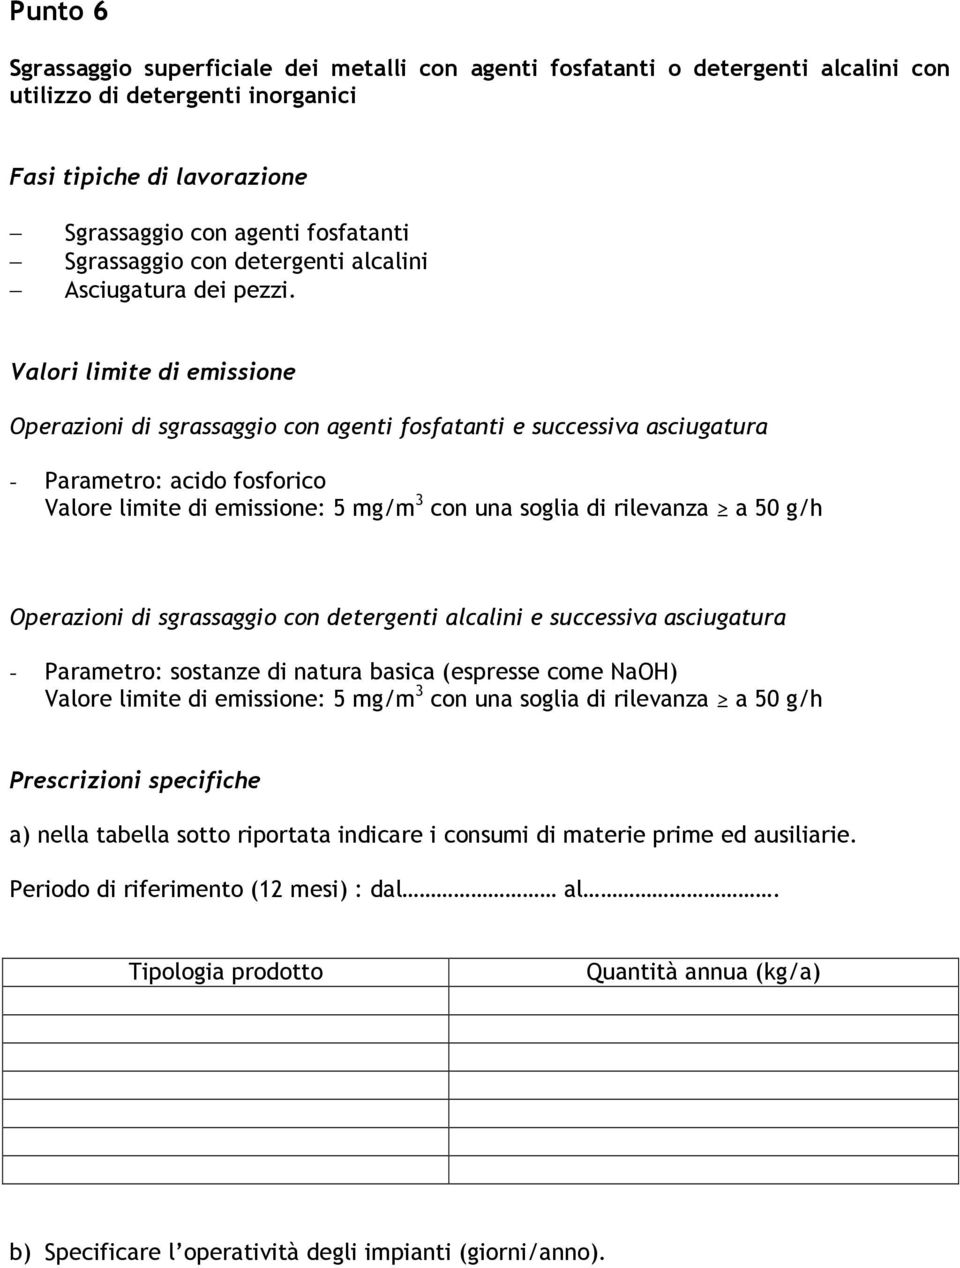 Operazioni di sgrassaggio con agenti fosfatanti e successiva asciugatura - Parametro: acido fosforico Valore limite di emissione: 5 mg/m 3 con una soglia di rilevanza a 50 g/h Operazioni di